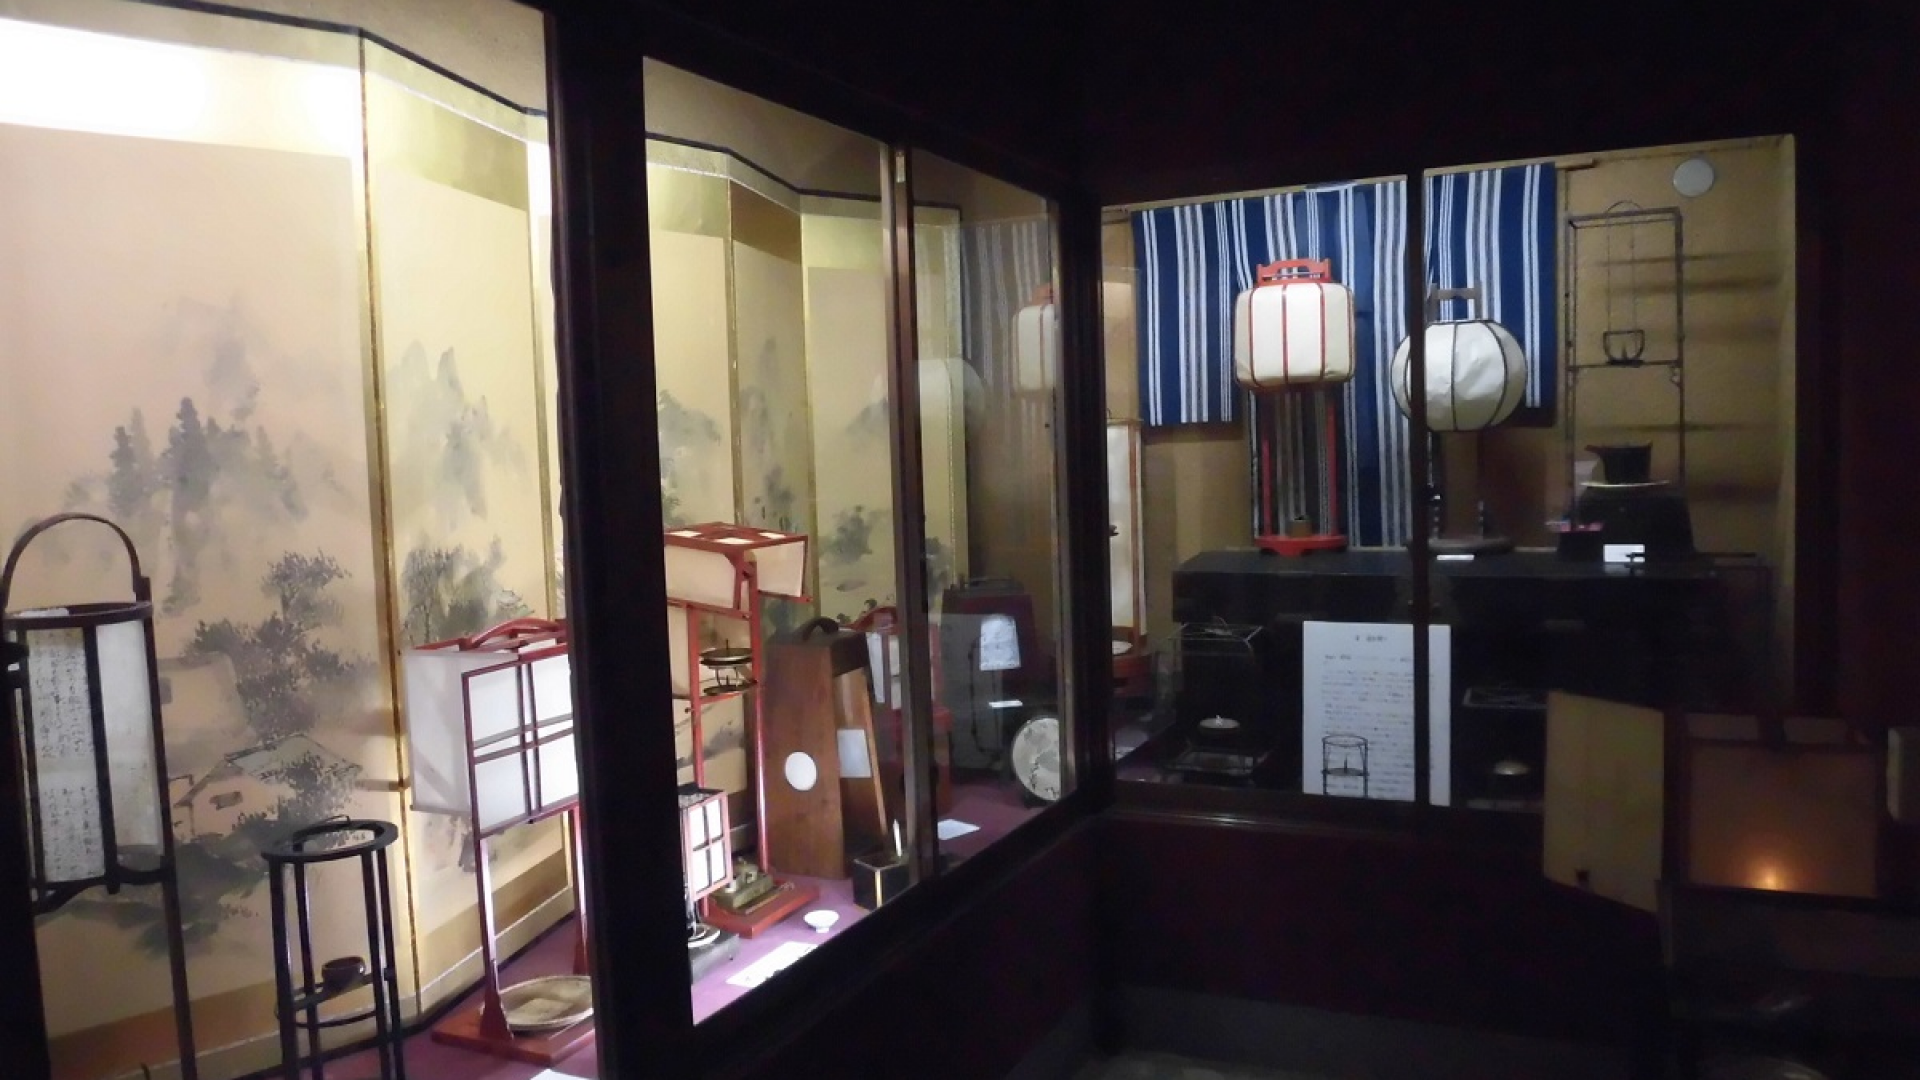 ประสบการณ์สนุกสนานที่พิพิธภัณฑ์ศิลปะพื้นบ้านญี่ปุ่น "เอโดะ มิงงุ ไคโดะ"